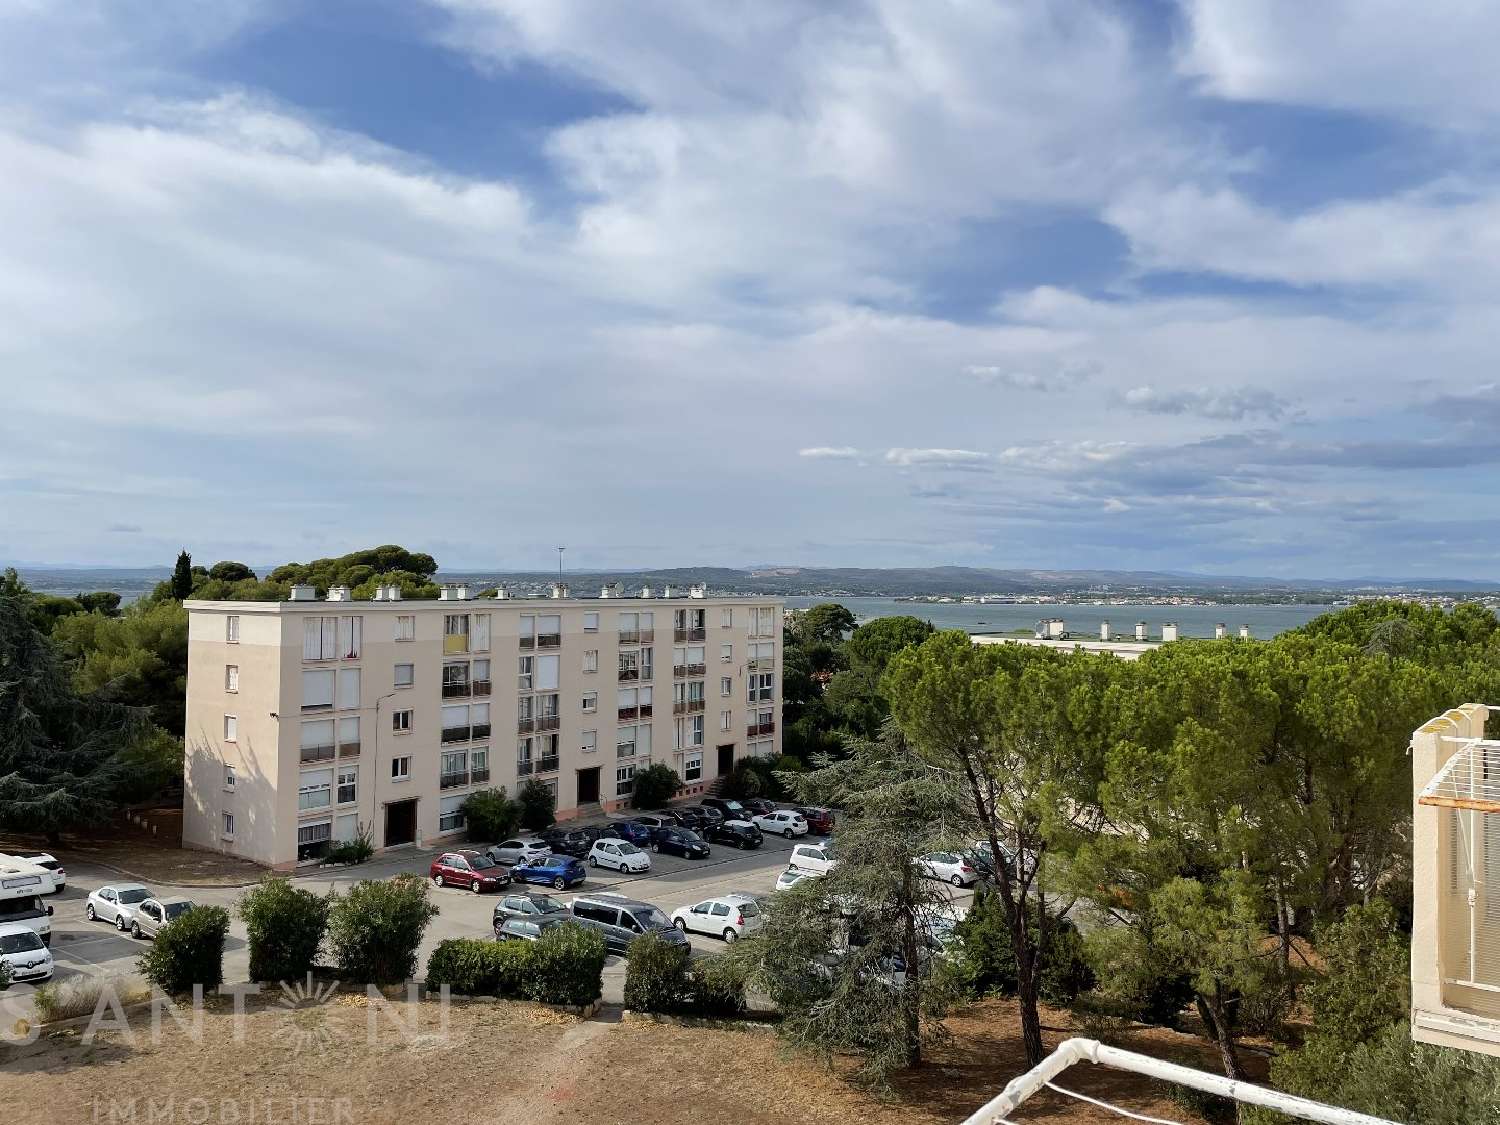  à vendre appartement Sète Hérault 1